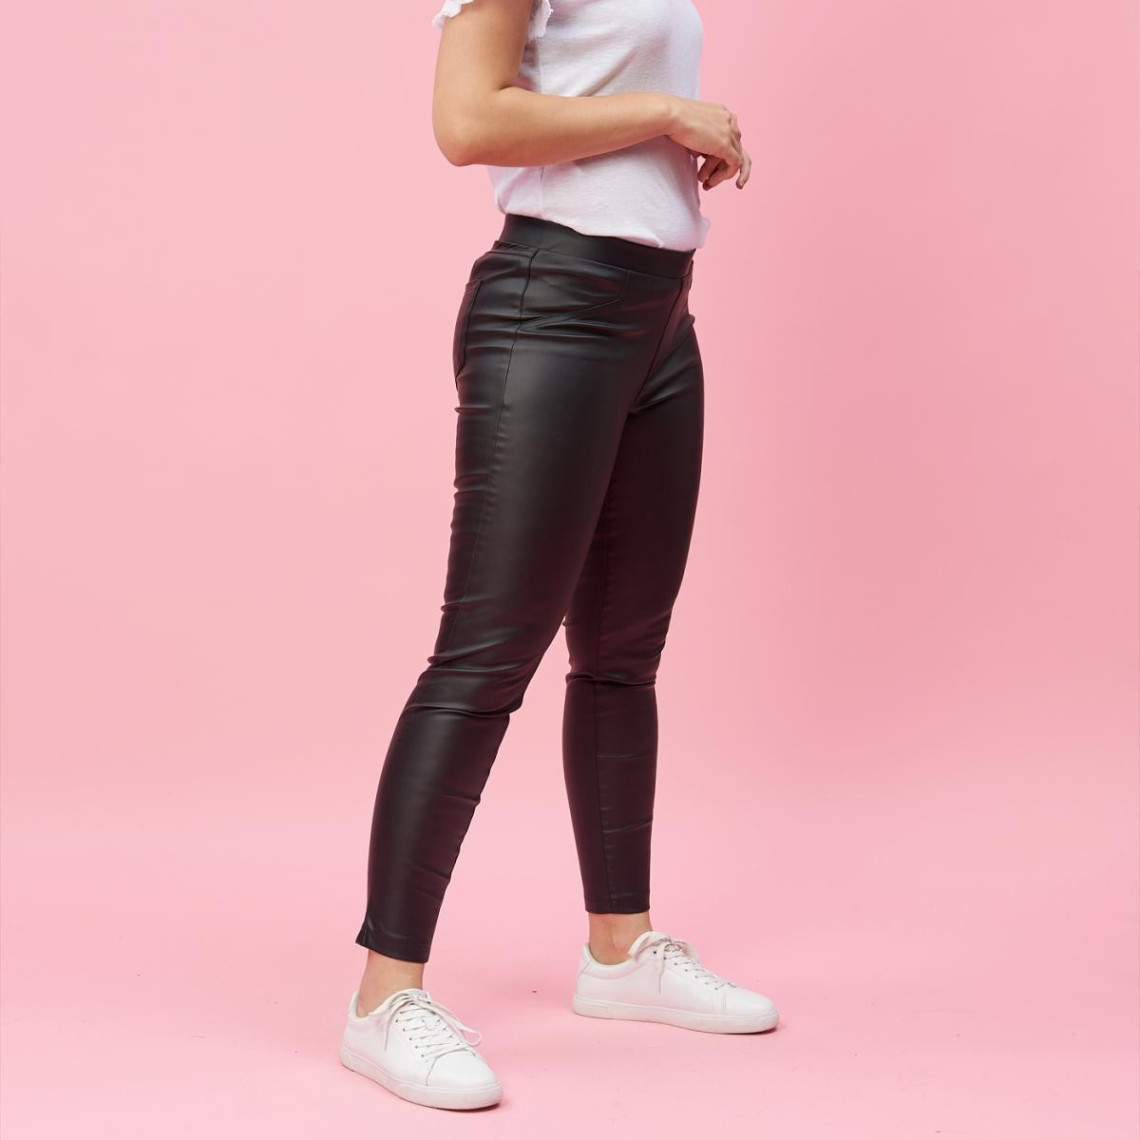 Pantalon taille élastique poches fantaisie femme - Noir